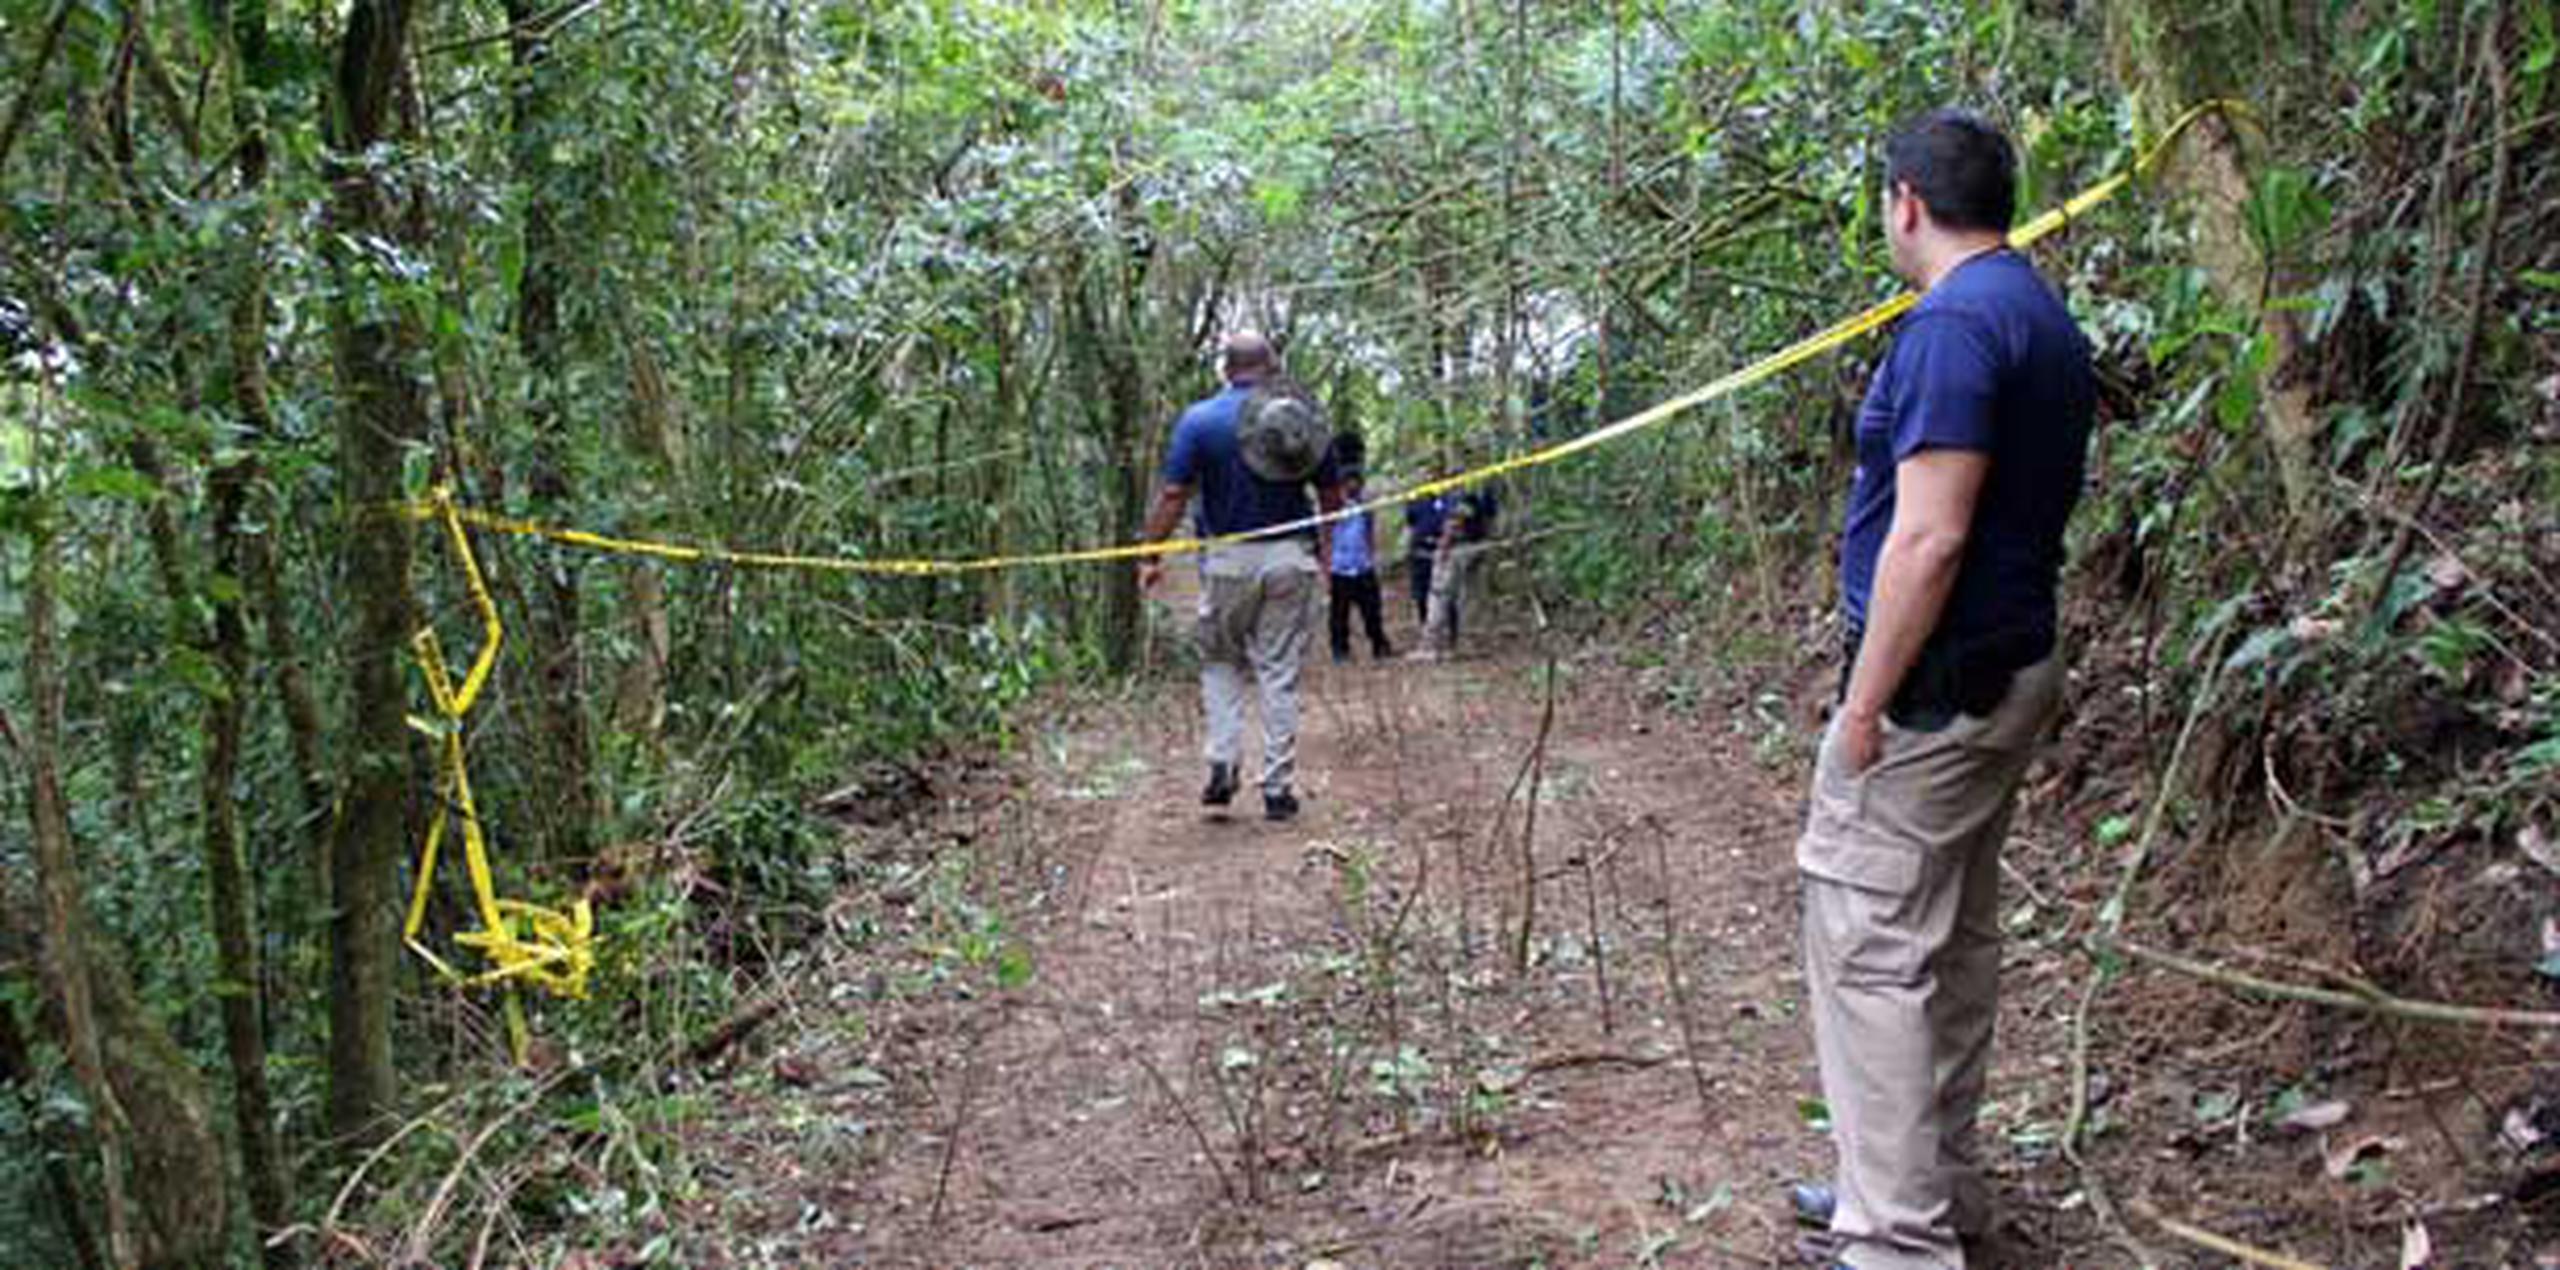 La evaluación de los restos se ha dificultado por lo remoto del lugar boscoso, que queda cerca de la carretera PR-746. (alex.figueroa@gfrmedia.com)